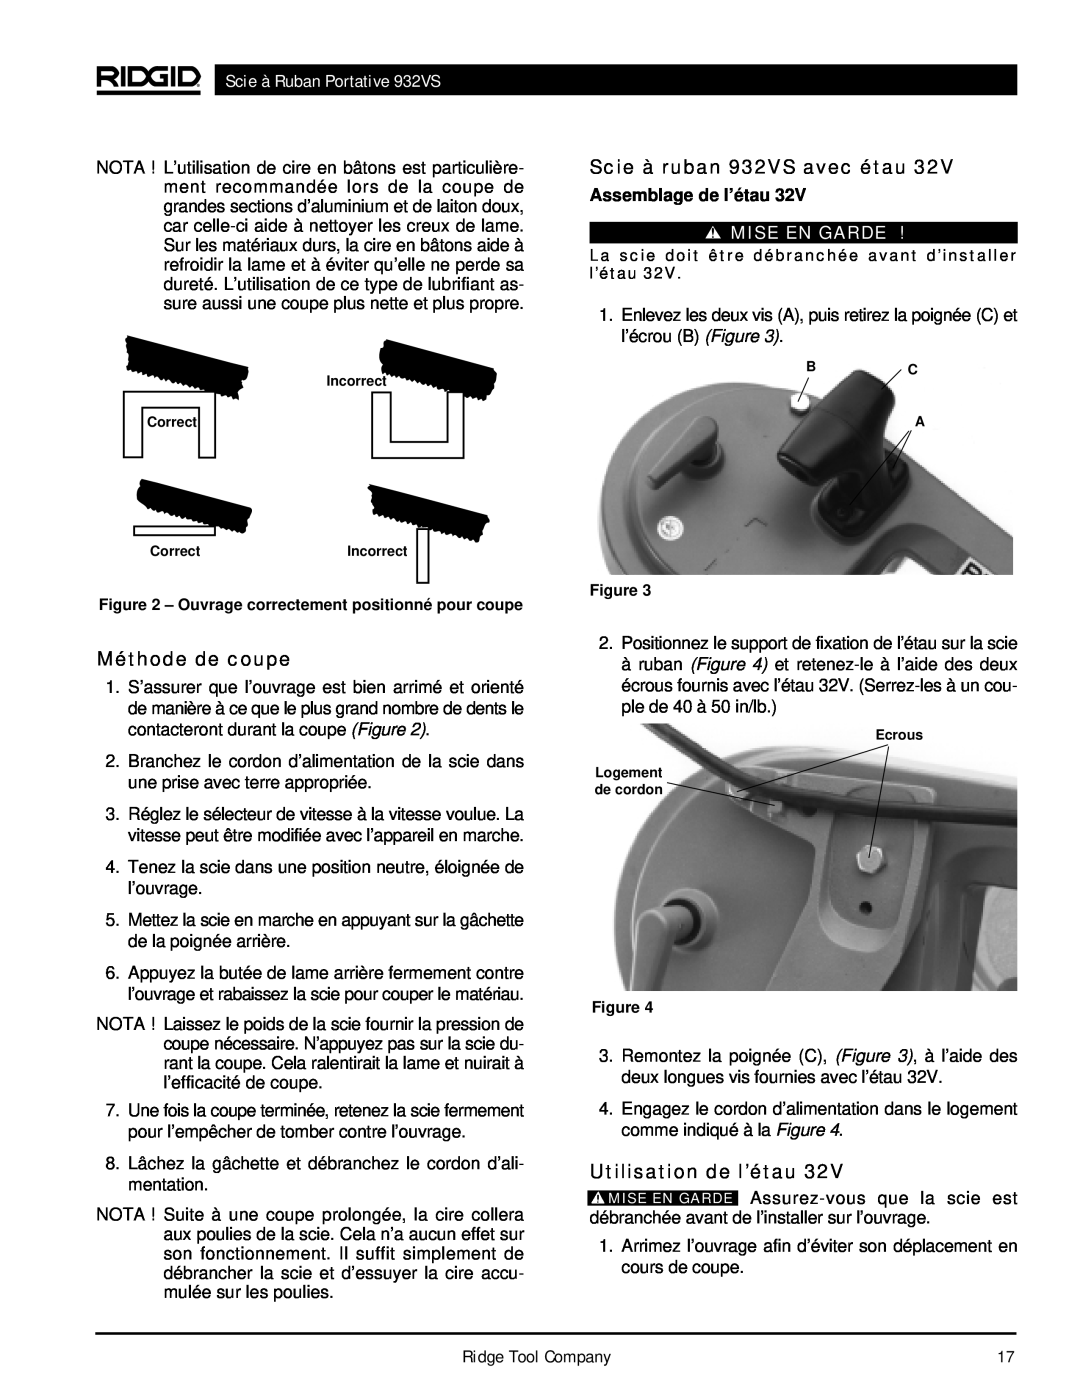 RIDGID manual Méthode de coupe, Scie à ruban 932VS avec étau, Utilisation de l’étau, Scie à Ruban Portative 932VS 